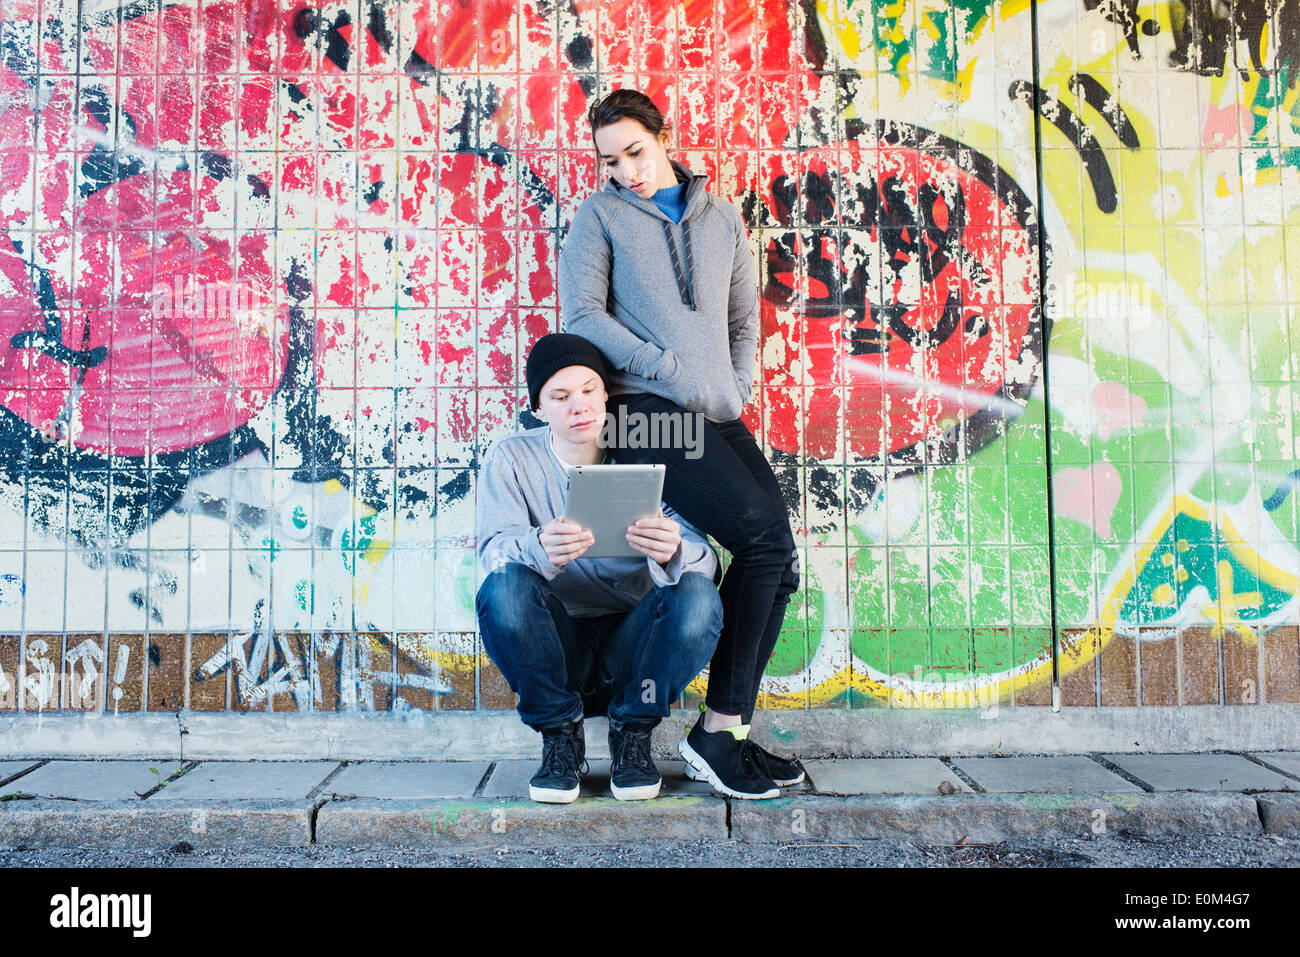 Porträt des lockeren und entspannten junger Mann und Frau liest auf einem Notizblock vor Graffiti-Wand im Stadtgebiet. Stockfoto